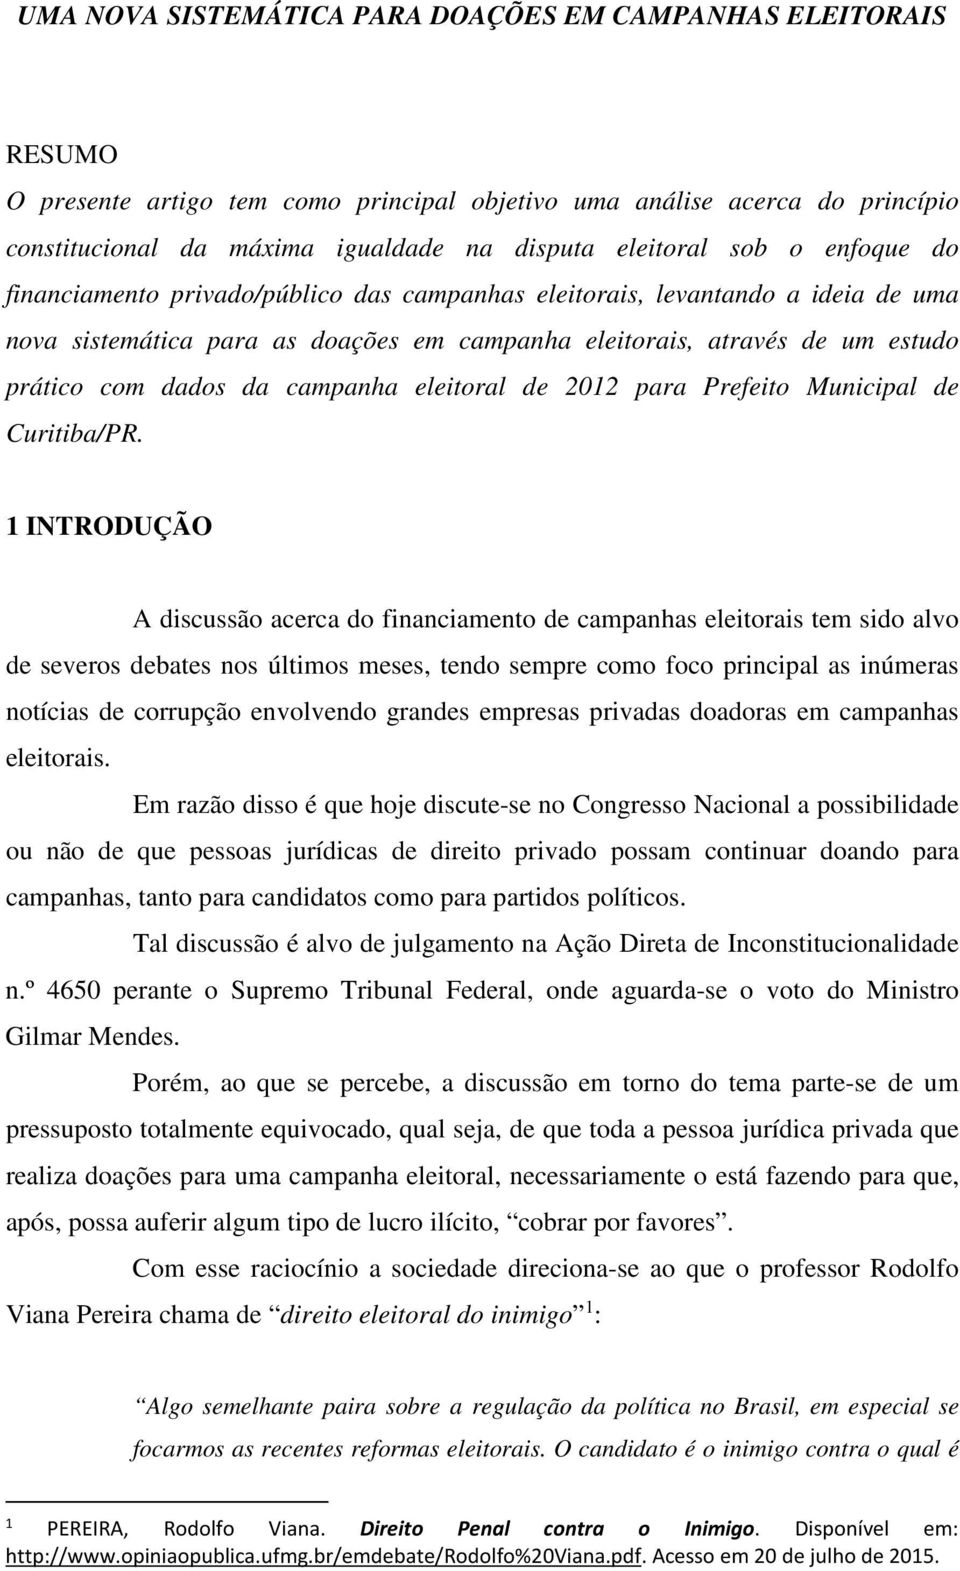 campanha eleitoral de 2012 para Prefeito Municipal de Curitiba/PR.